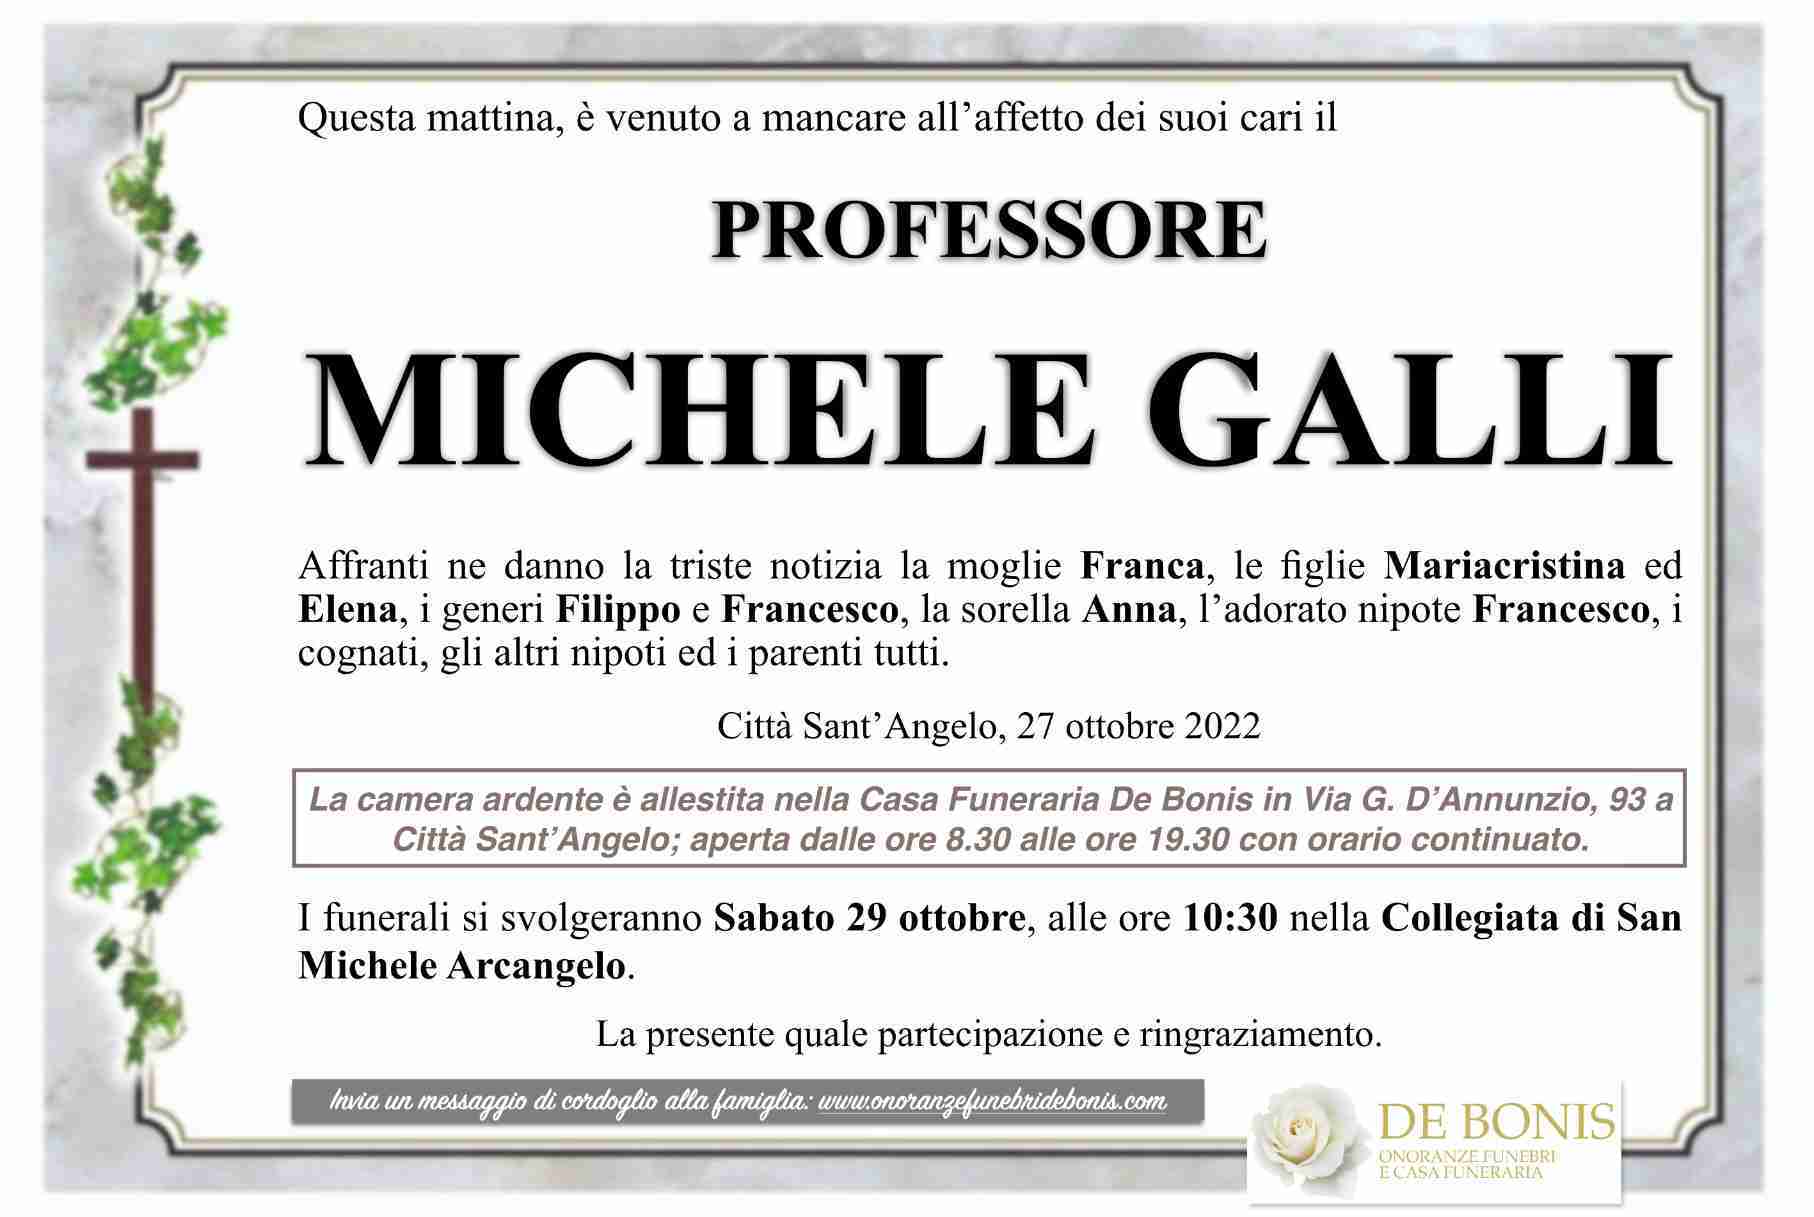 Michele Galli